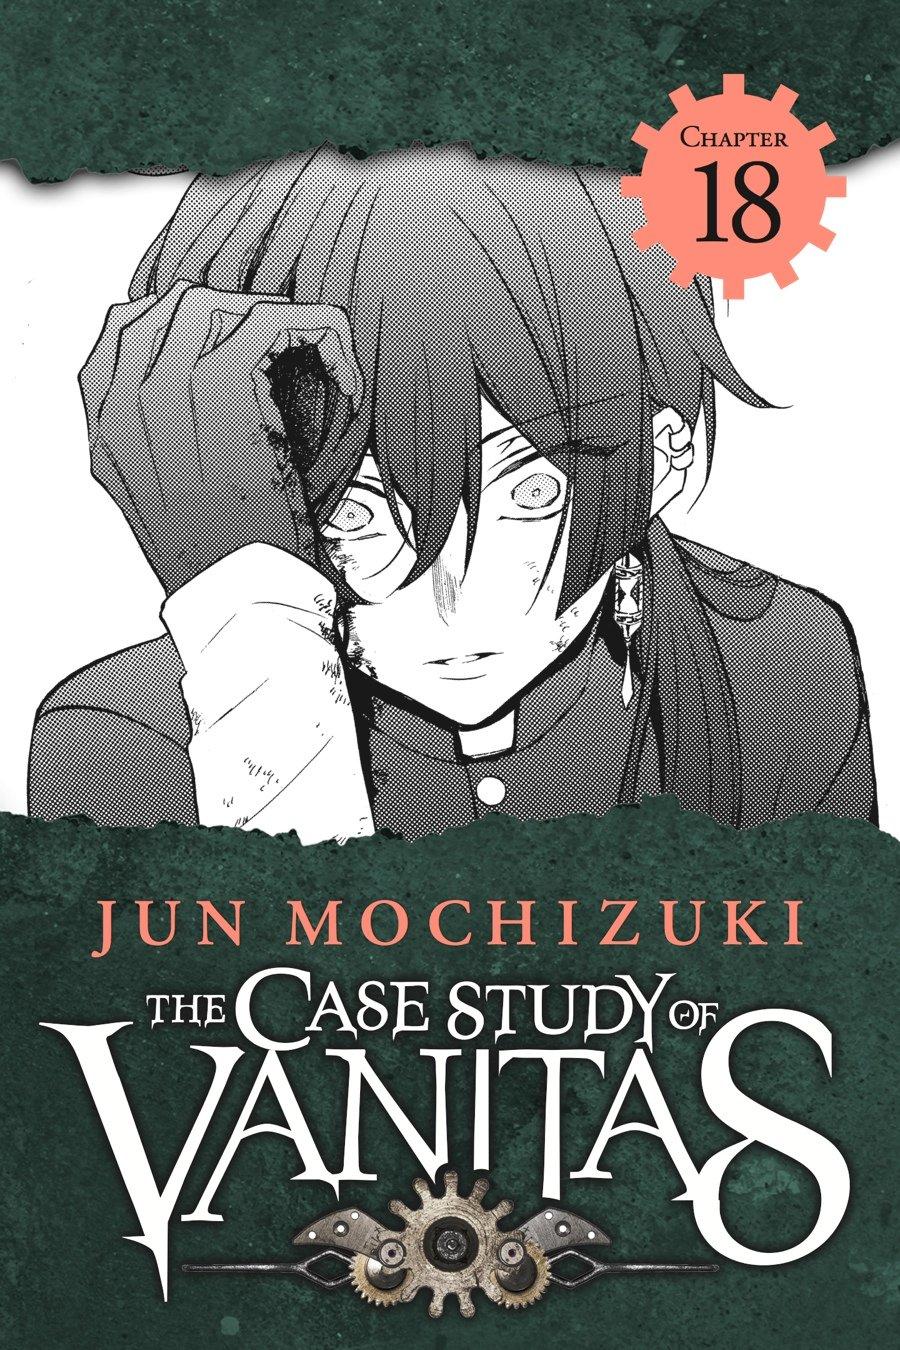 Vanitas no Carte - The Case Study of Vanitas, Vanitas no Karte, Vanitas no  Shuki - Animes Online